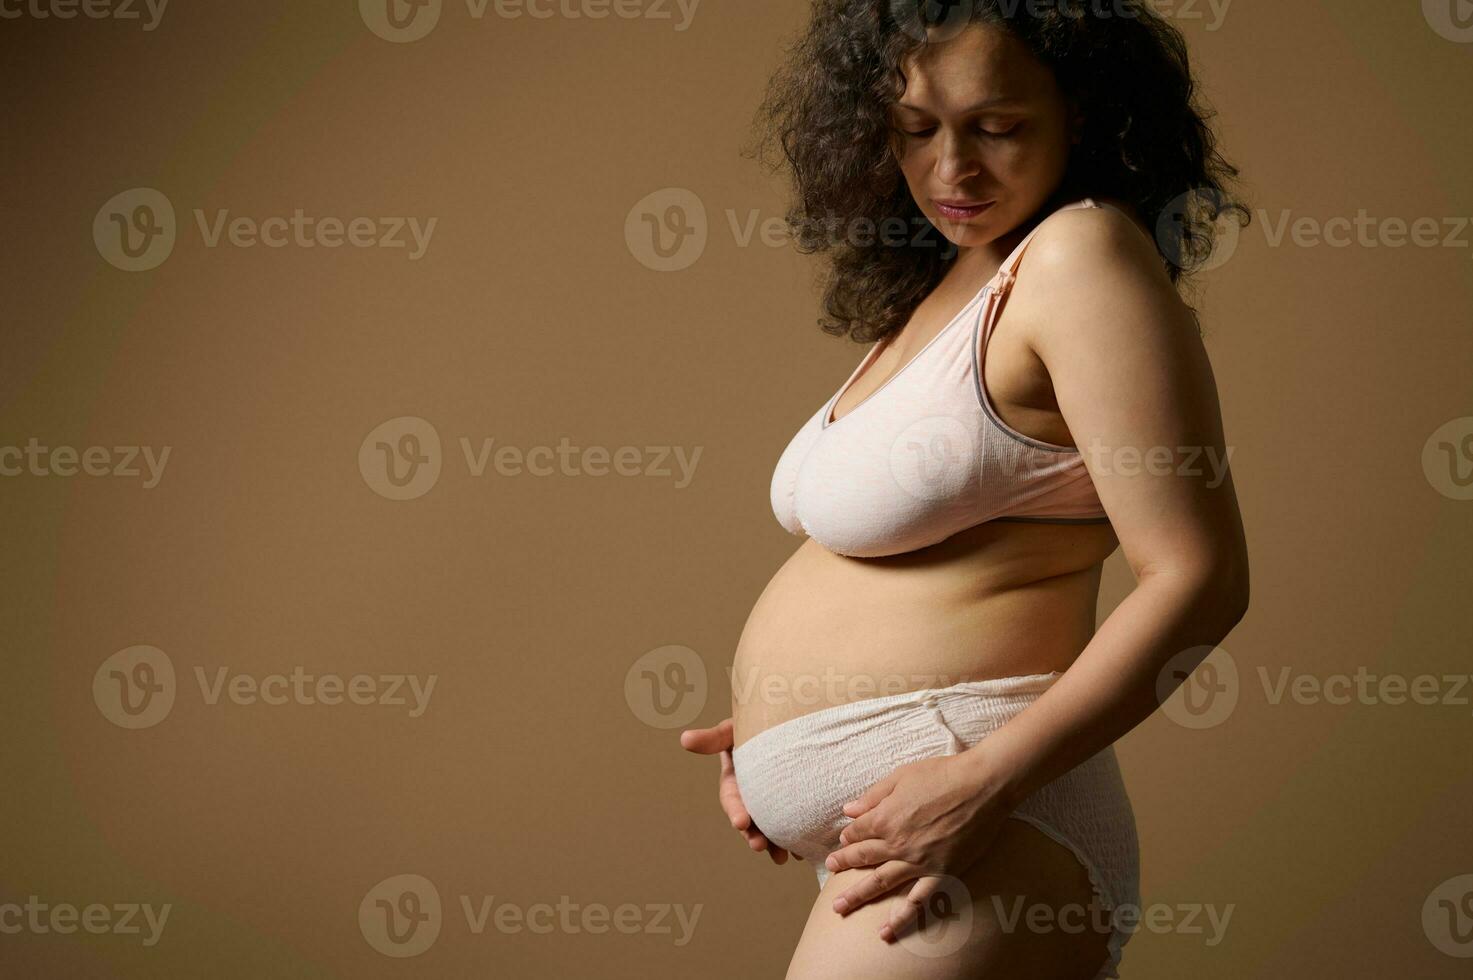 cuerpo positivo mujer madre en lencería, con postnatal desnudo barriga con defectos tramo marcas pocos dias después parto foto